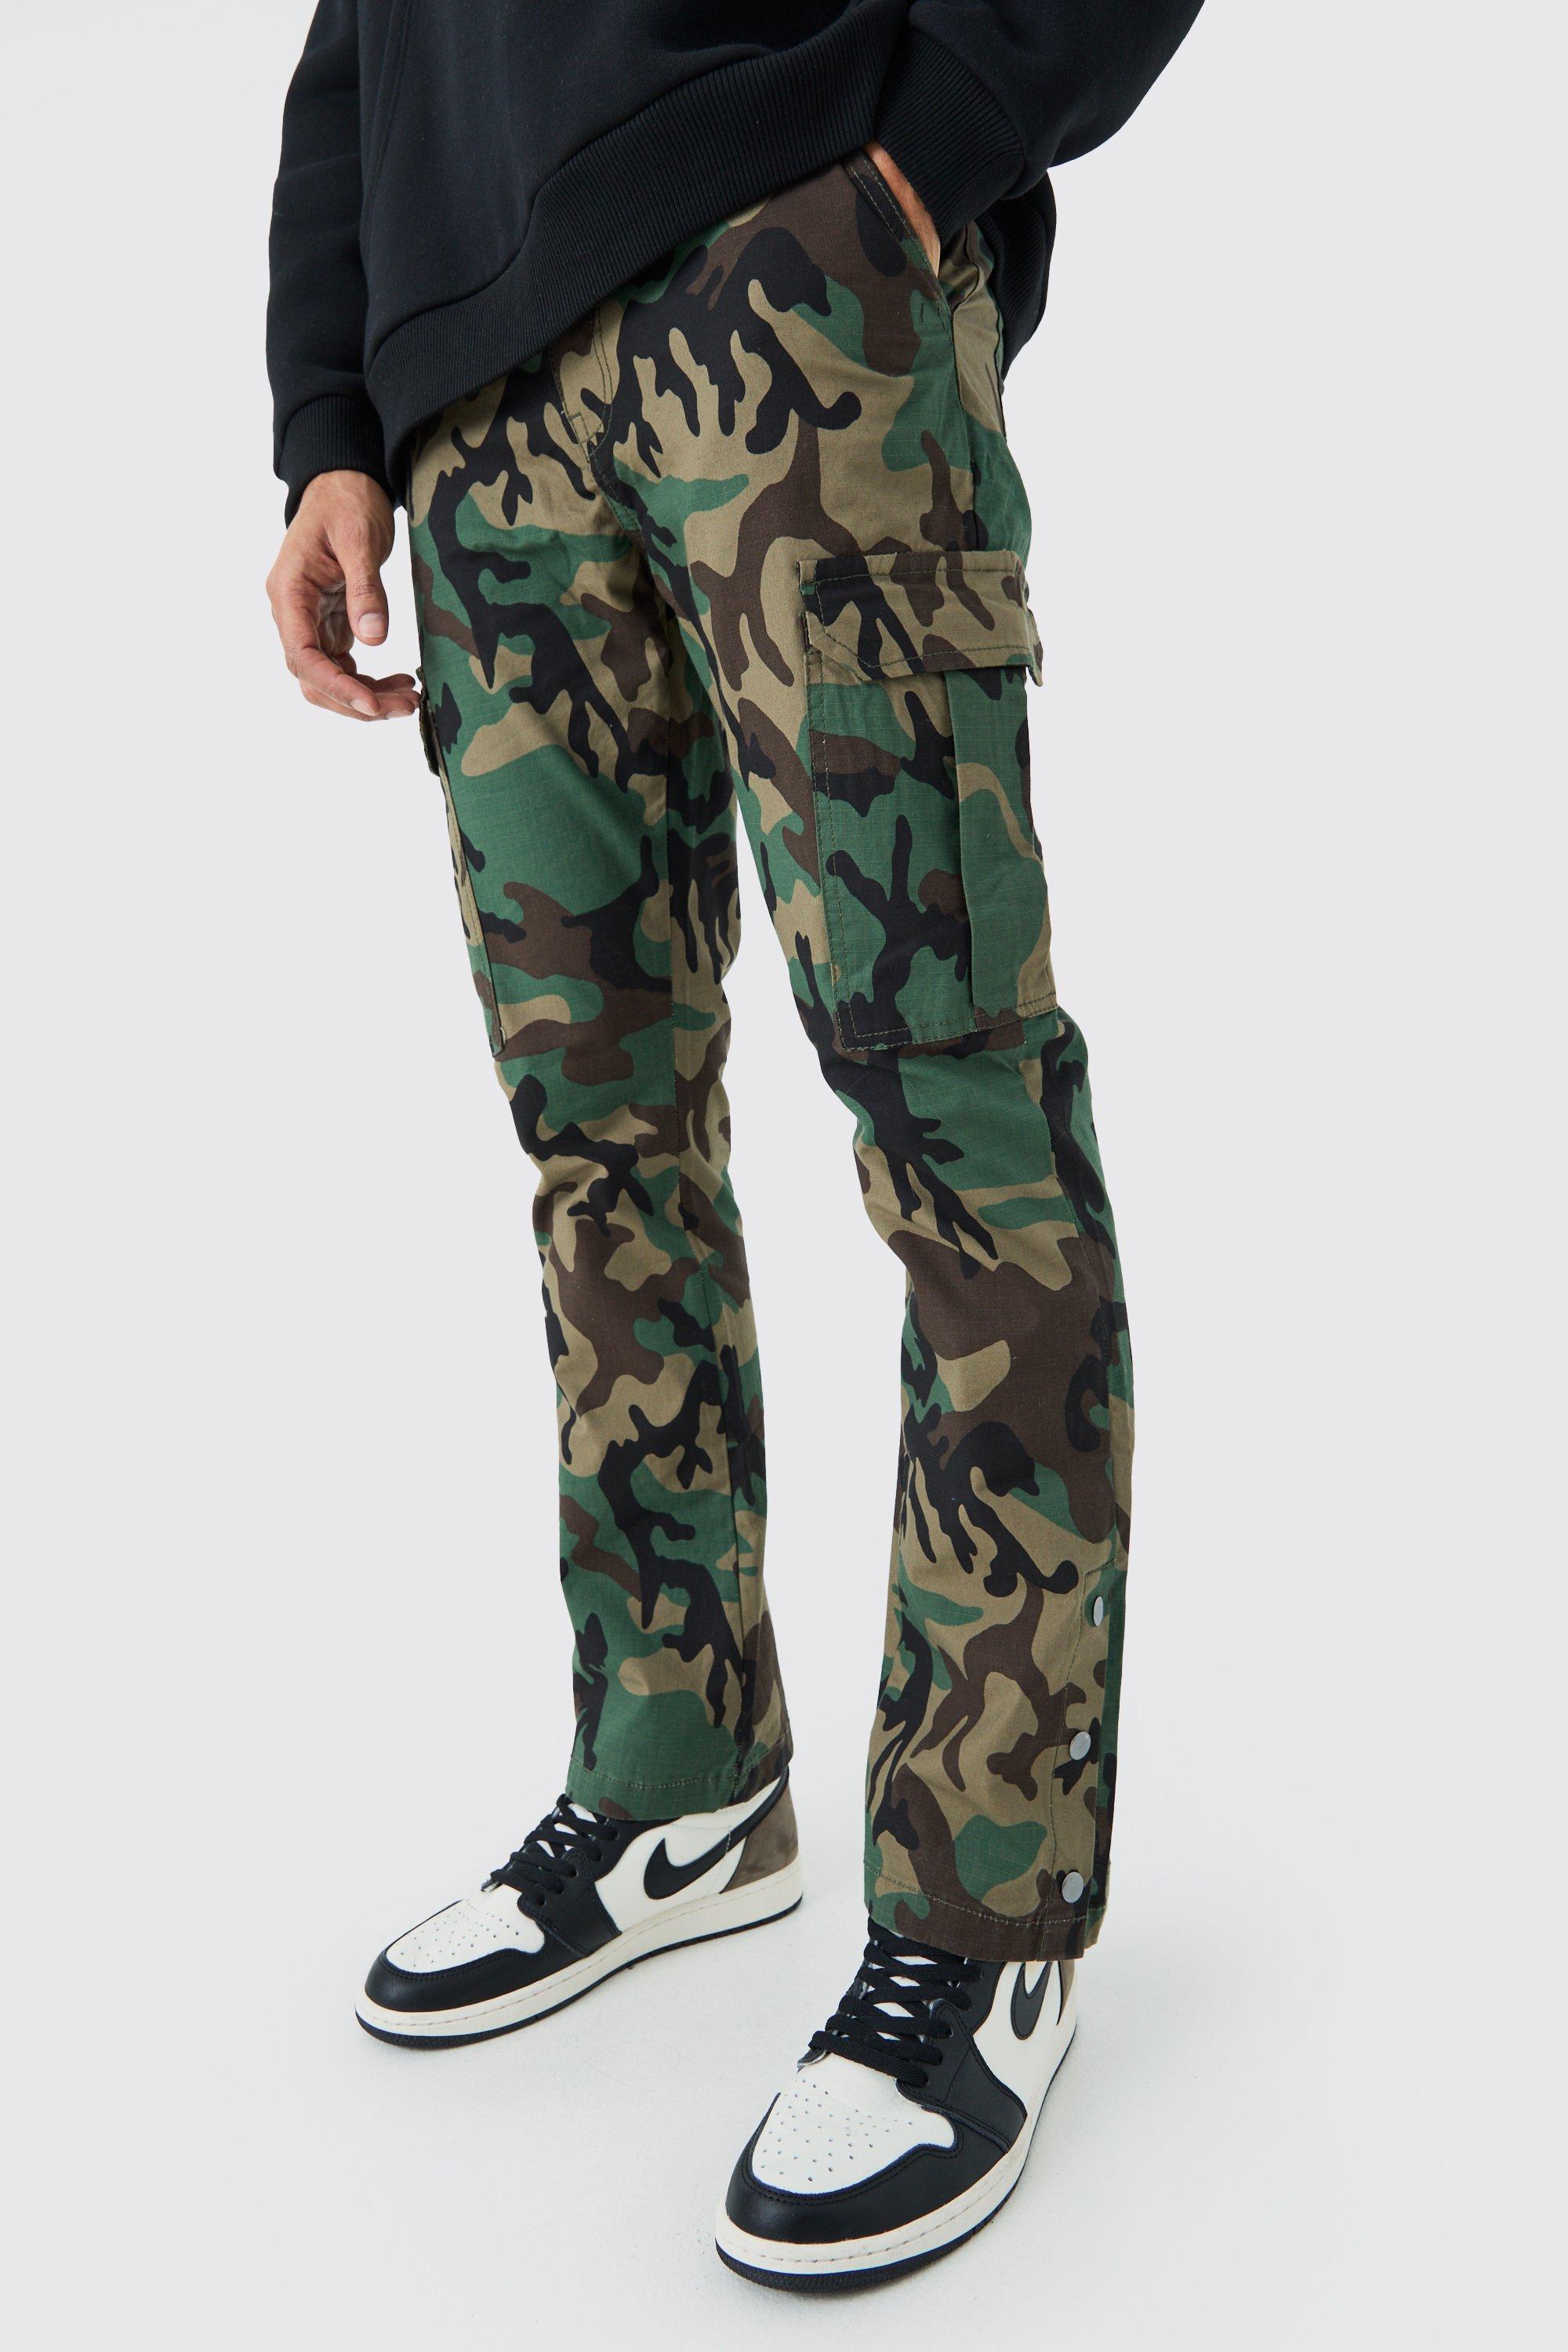 Image of Pantaloni Cargo Slim Fit a zampa in nylon ripstop in fantasia militare con bottoni a pressione sul fondo, Verde